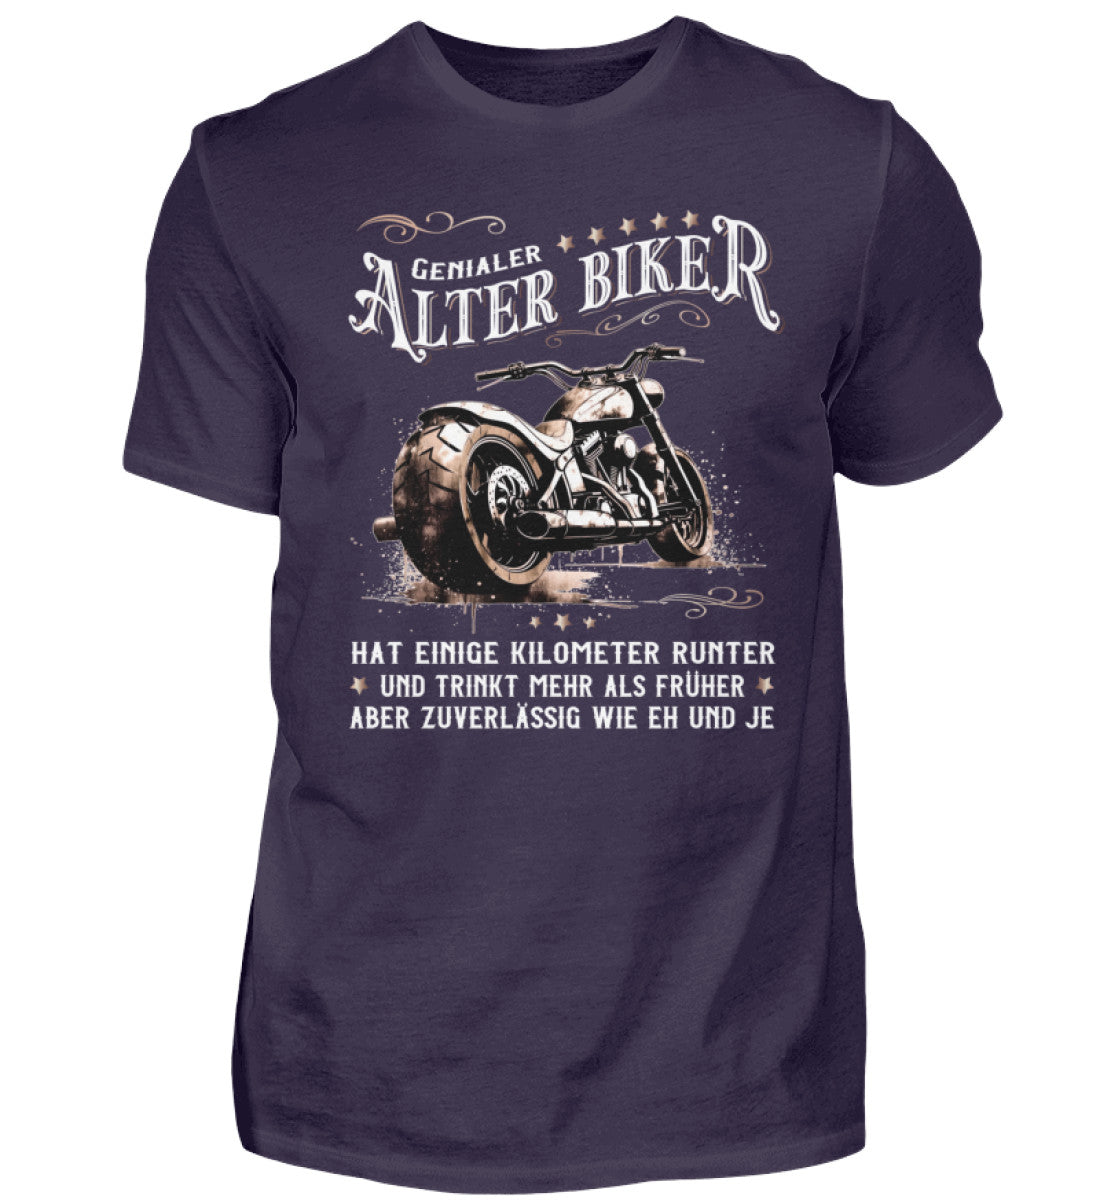 Ein Biker T-Shirt für Motorradfahrer von Wingbikers mit dem Aufdruck, Alter Biker - Einige Kilometer runter, trinkt mehr - aber zuverlässig wie eh und je - in aubergine lila.